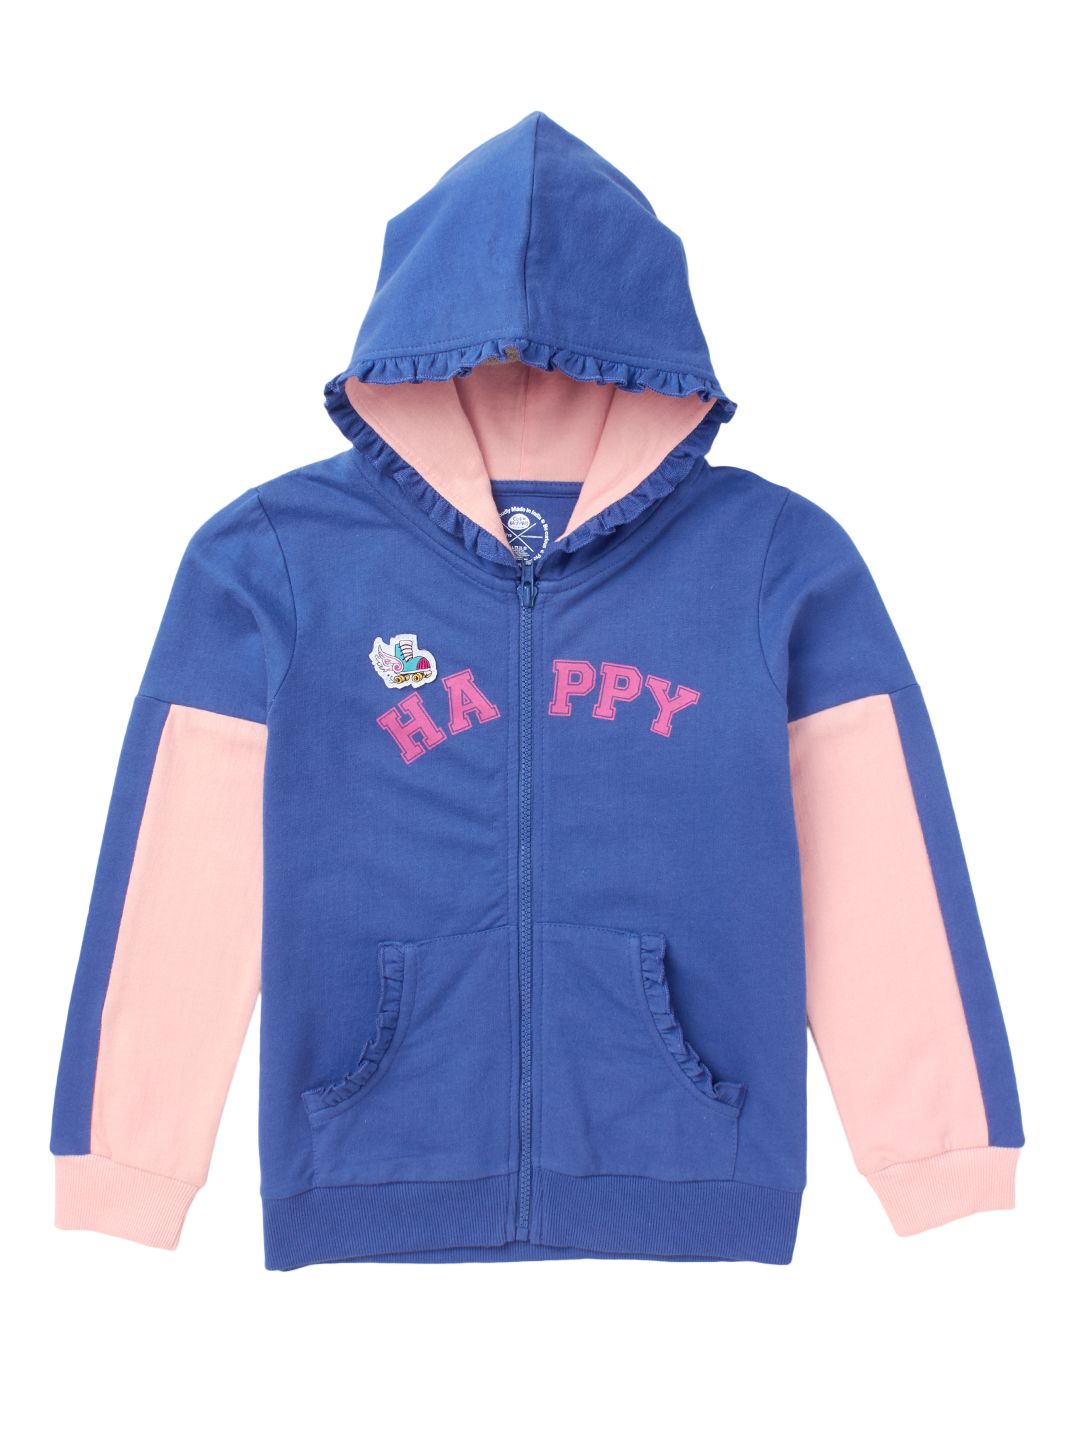 Unisex Boys Girls Plain Zip Up Hooded Sweatshirt Hoodies Top Jumper School Wear Hoodies UK Size 1-13 Years 